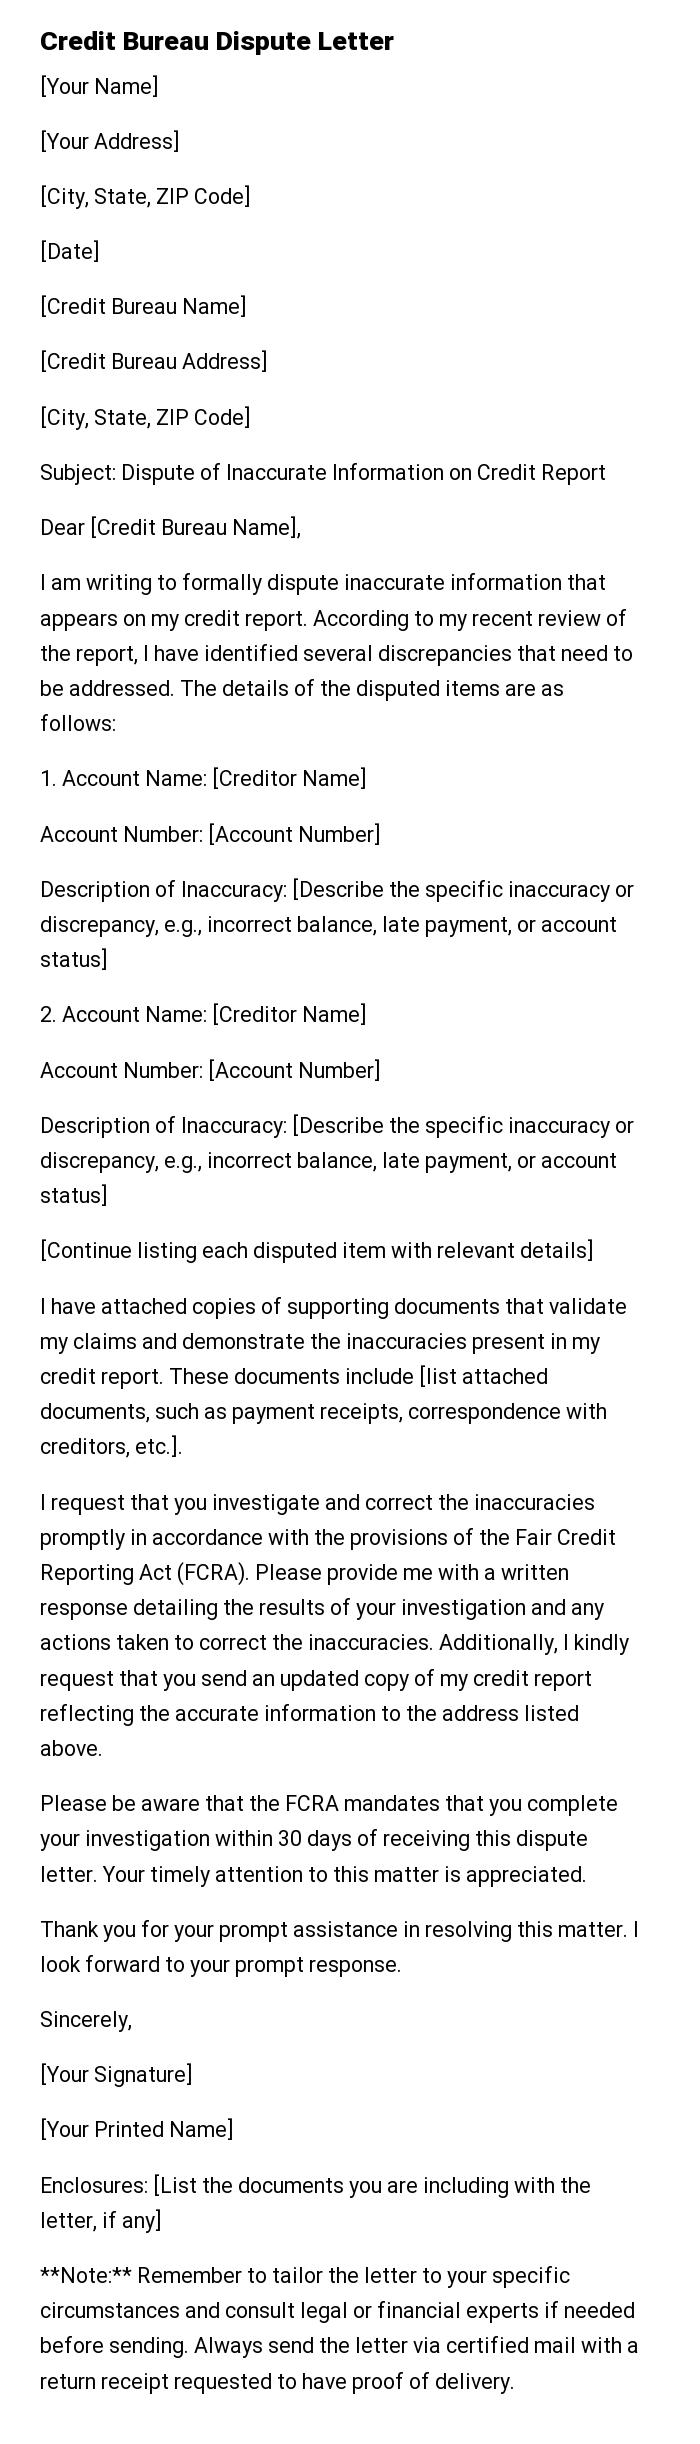 Credit Bureau Dispute Letter